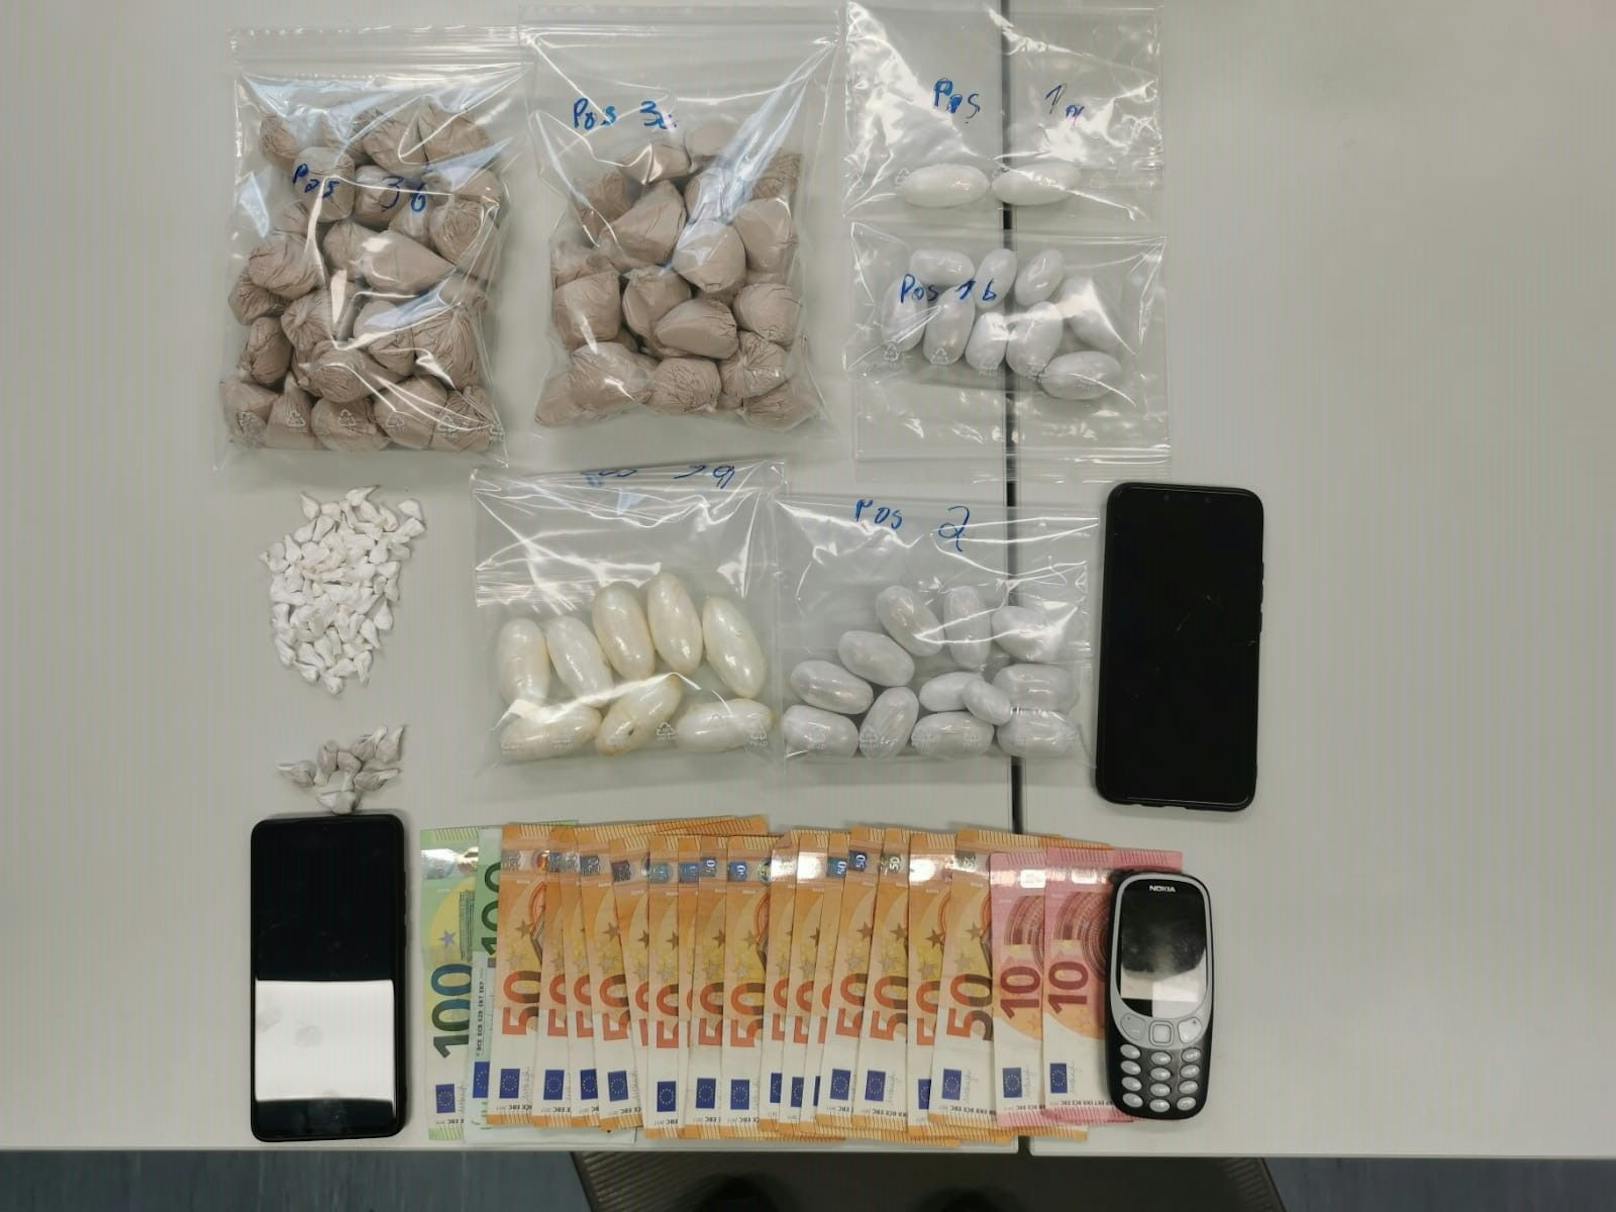 In der Wohnung fanden die Beamten neben diverser Drogen auch eine größere Menge Bargeld. Symbolbild.